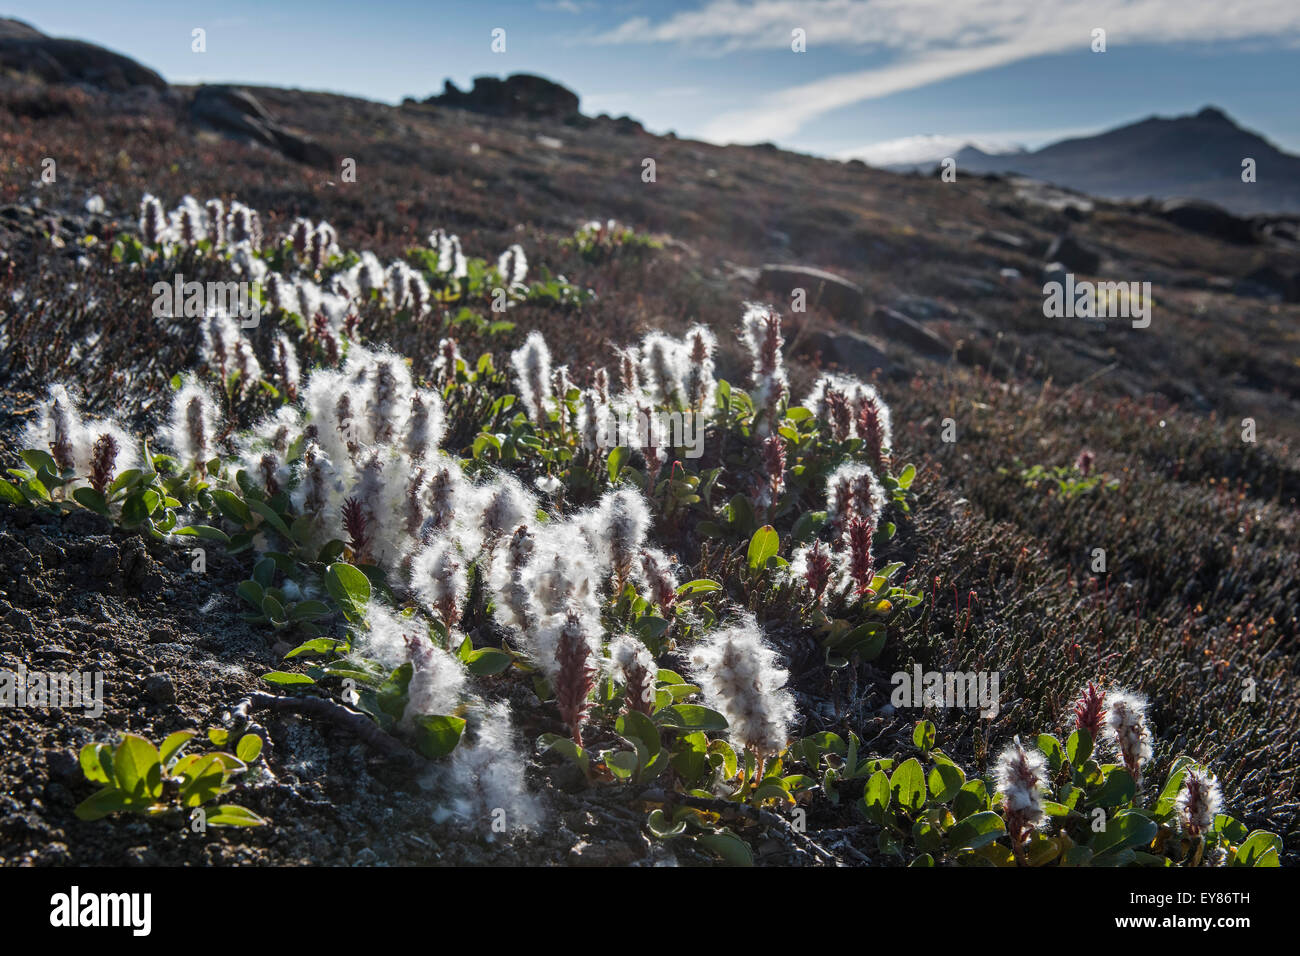 Le saule arctique (Salix arctica), au nord-est du parc national du Groenland, au Groenland, en Amérique du Nord Banque D'Images